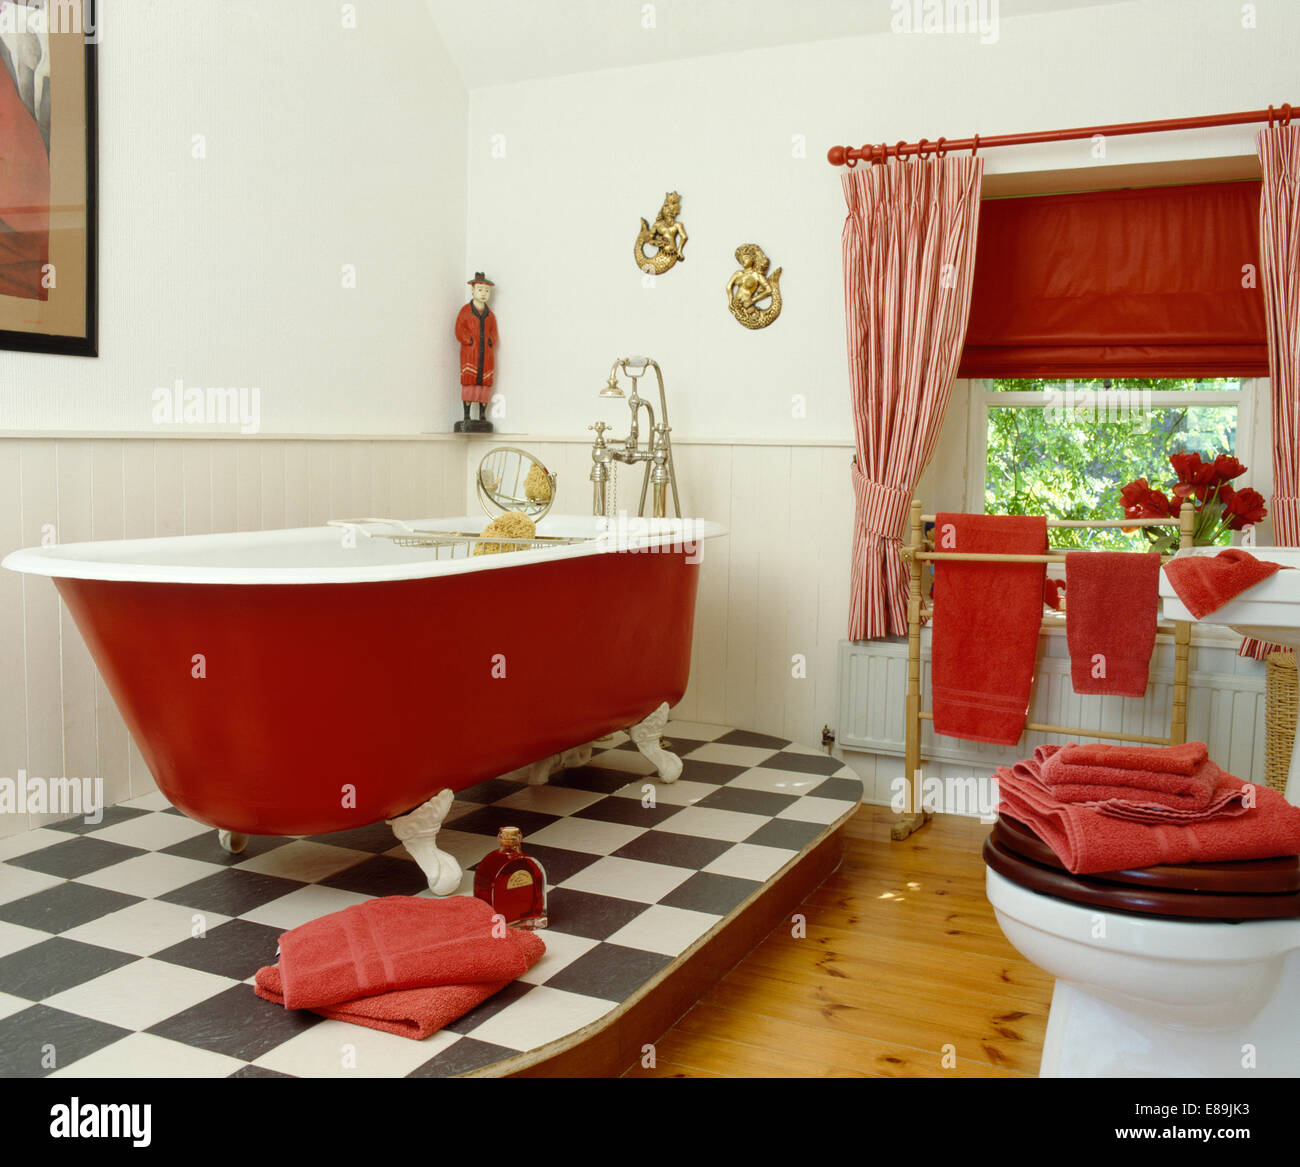 Red rolltop bagno su sollevato nero+bianco pavimento vinilico in bagno con tenda rossa e tende a strisce sulla finestra Foto Stock